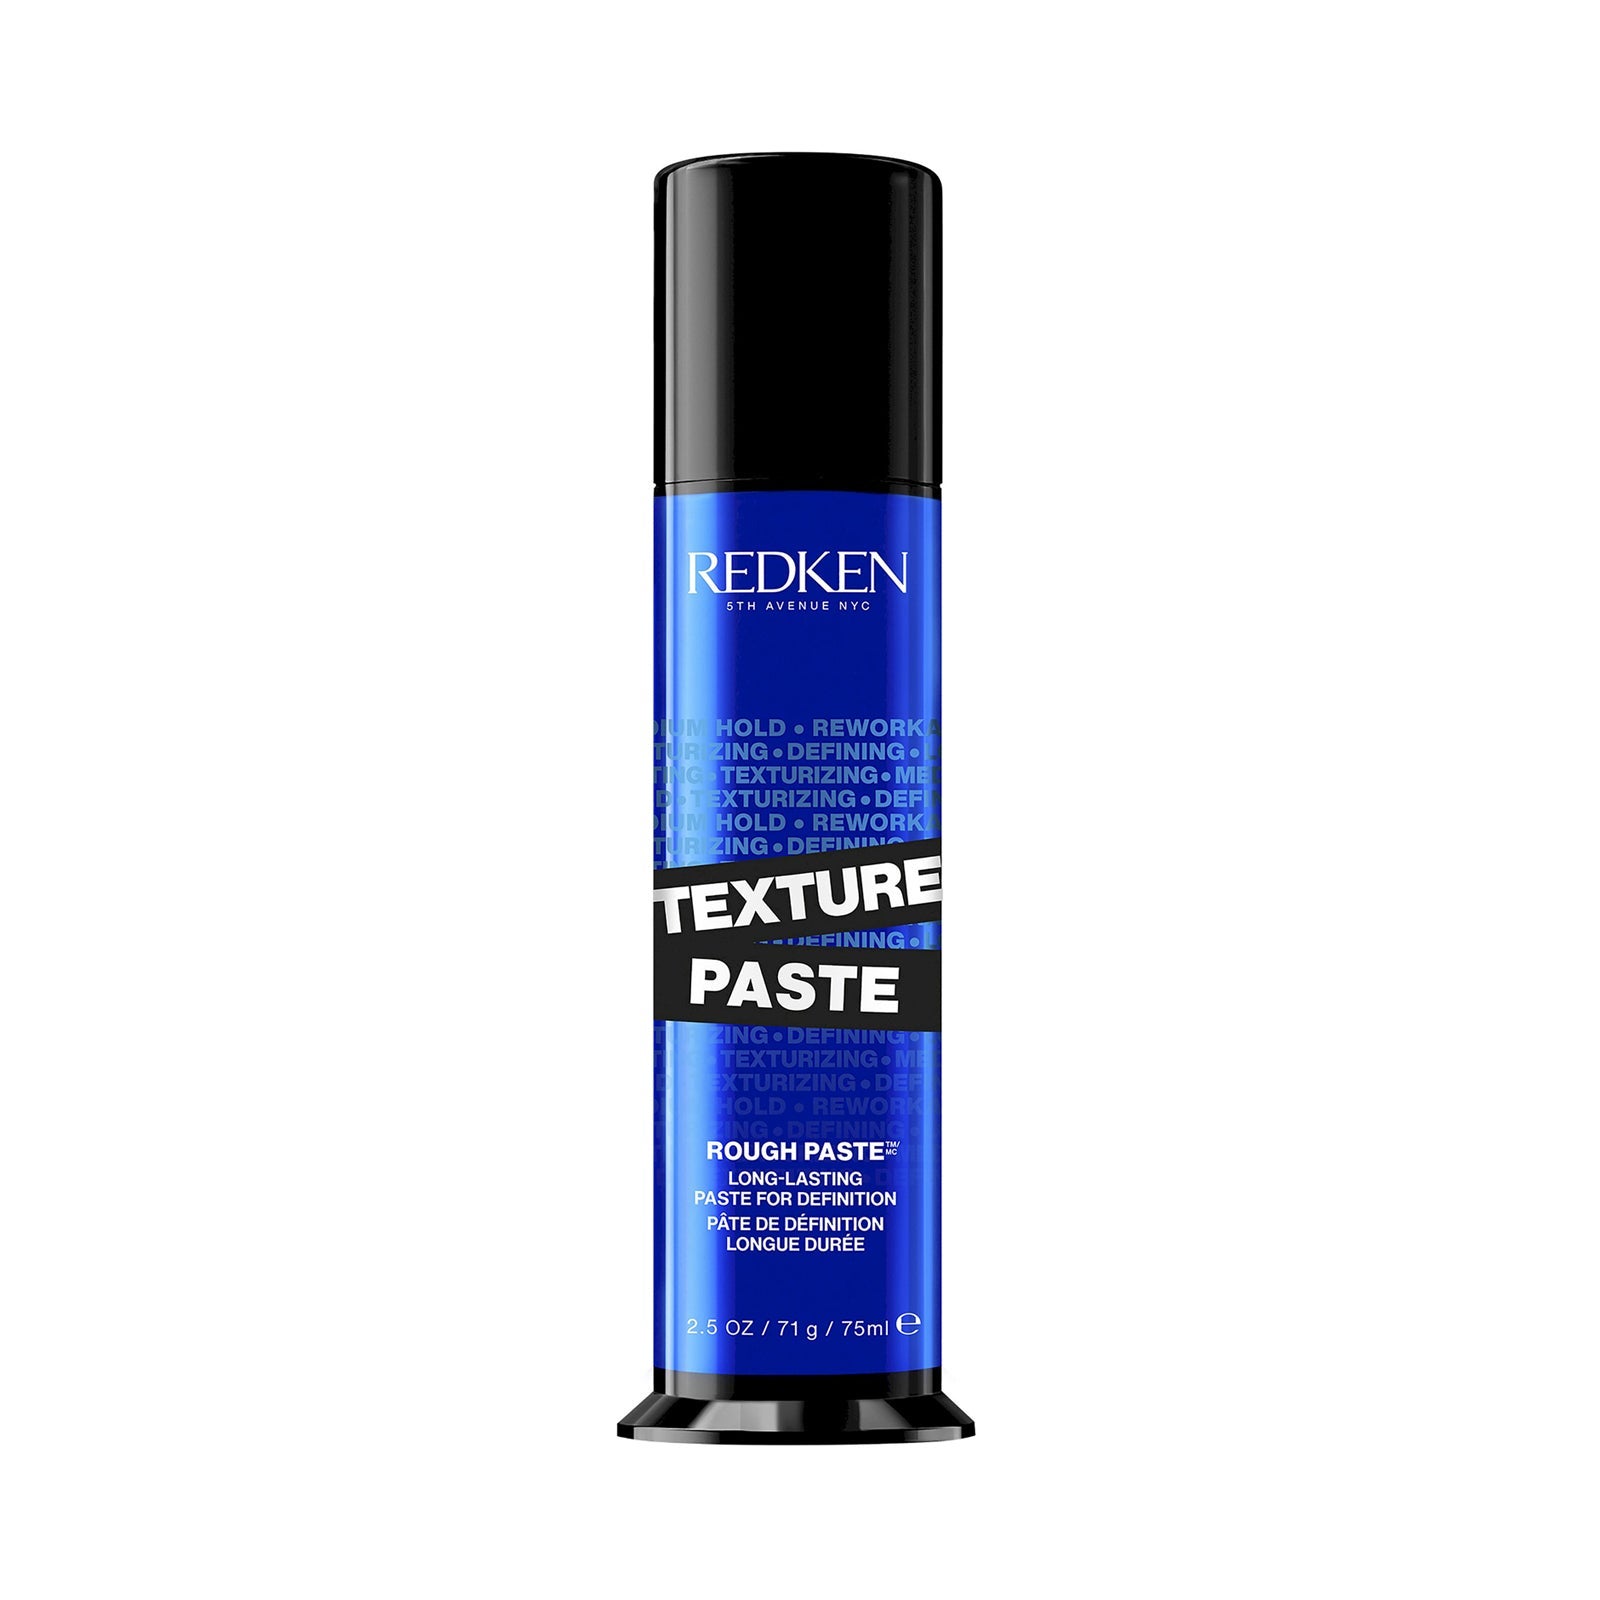 Redken Rough Paste 12 Working Material Hairstyling Paste (75ml) Medium Control